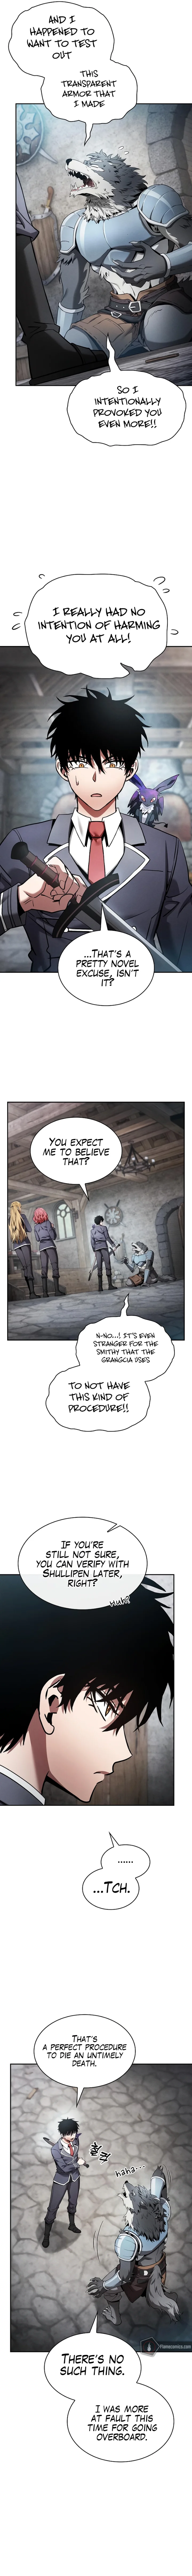 Academy’s Genius Swordsman - Chapter 20 Page 13